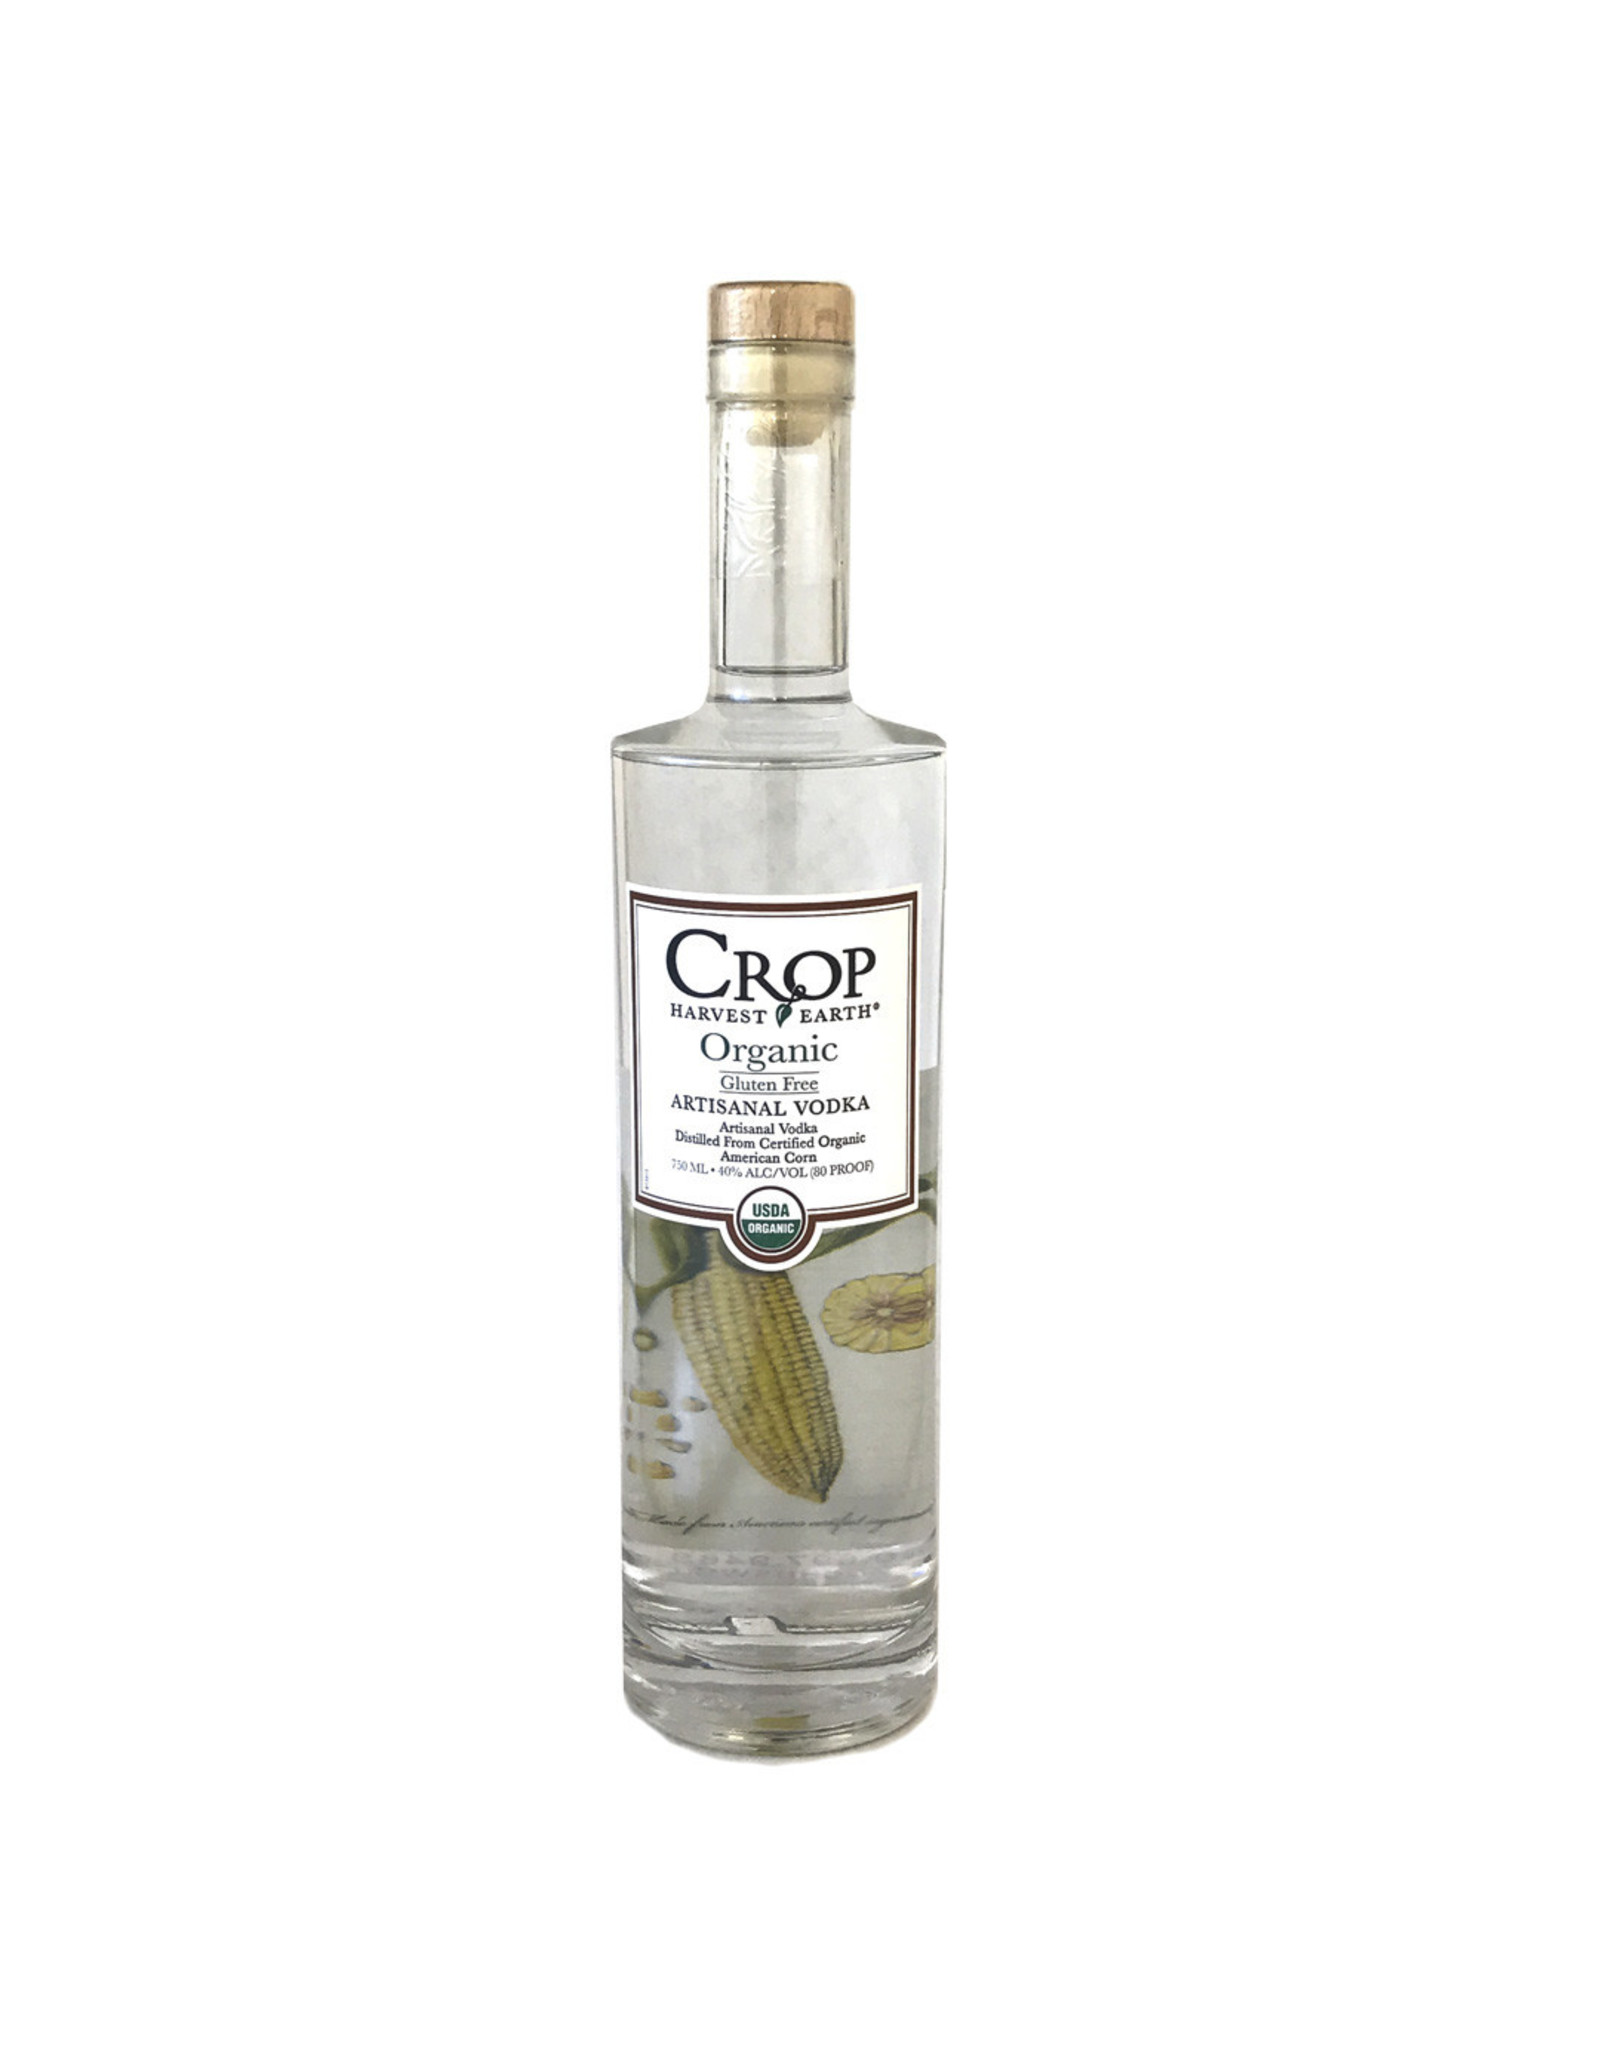 Crop Artisanal Organic Vodka